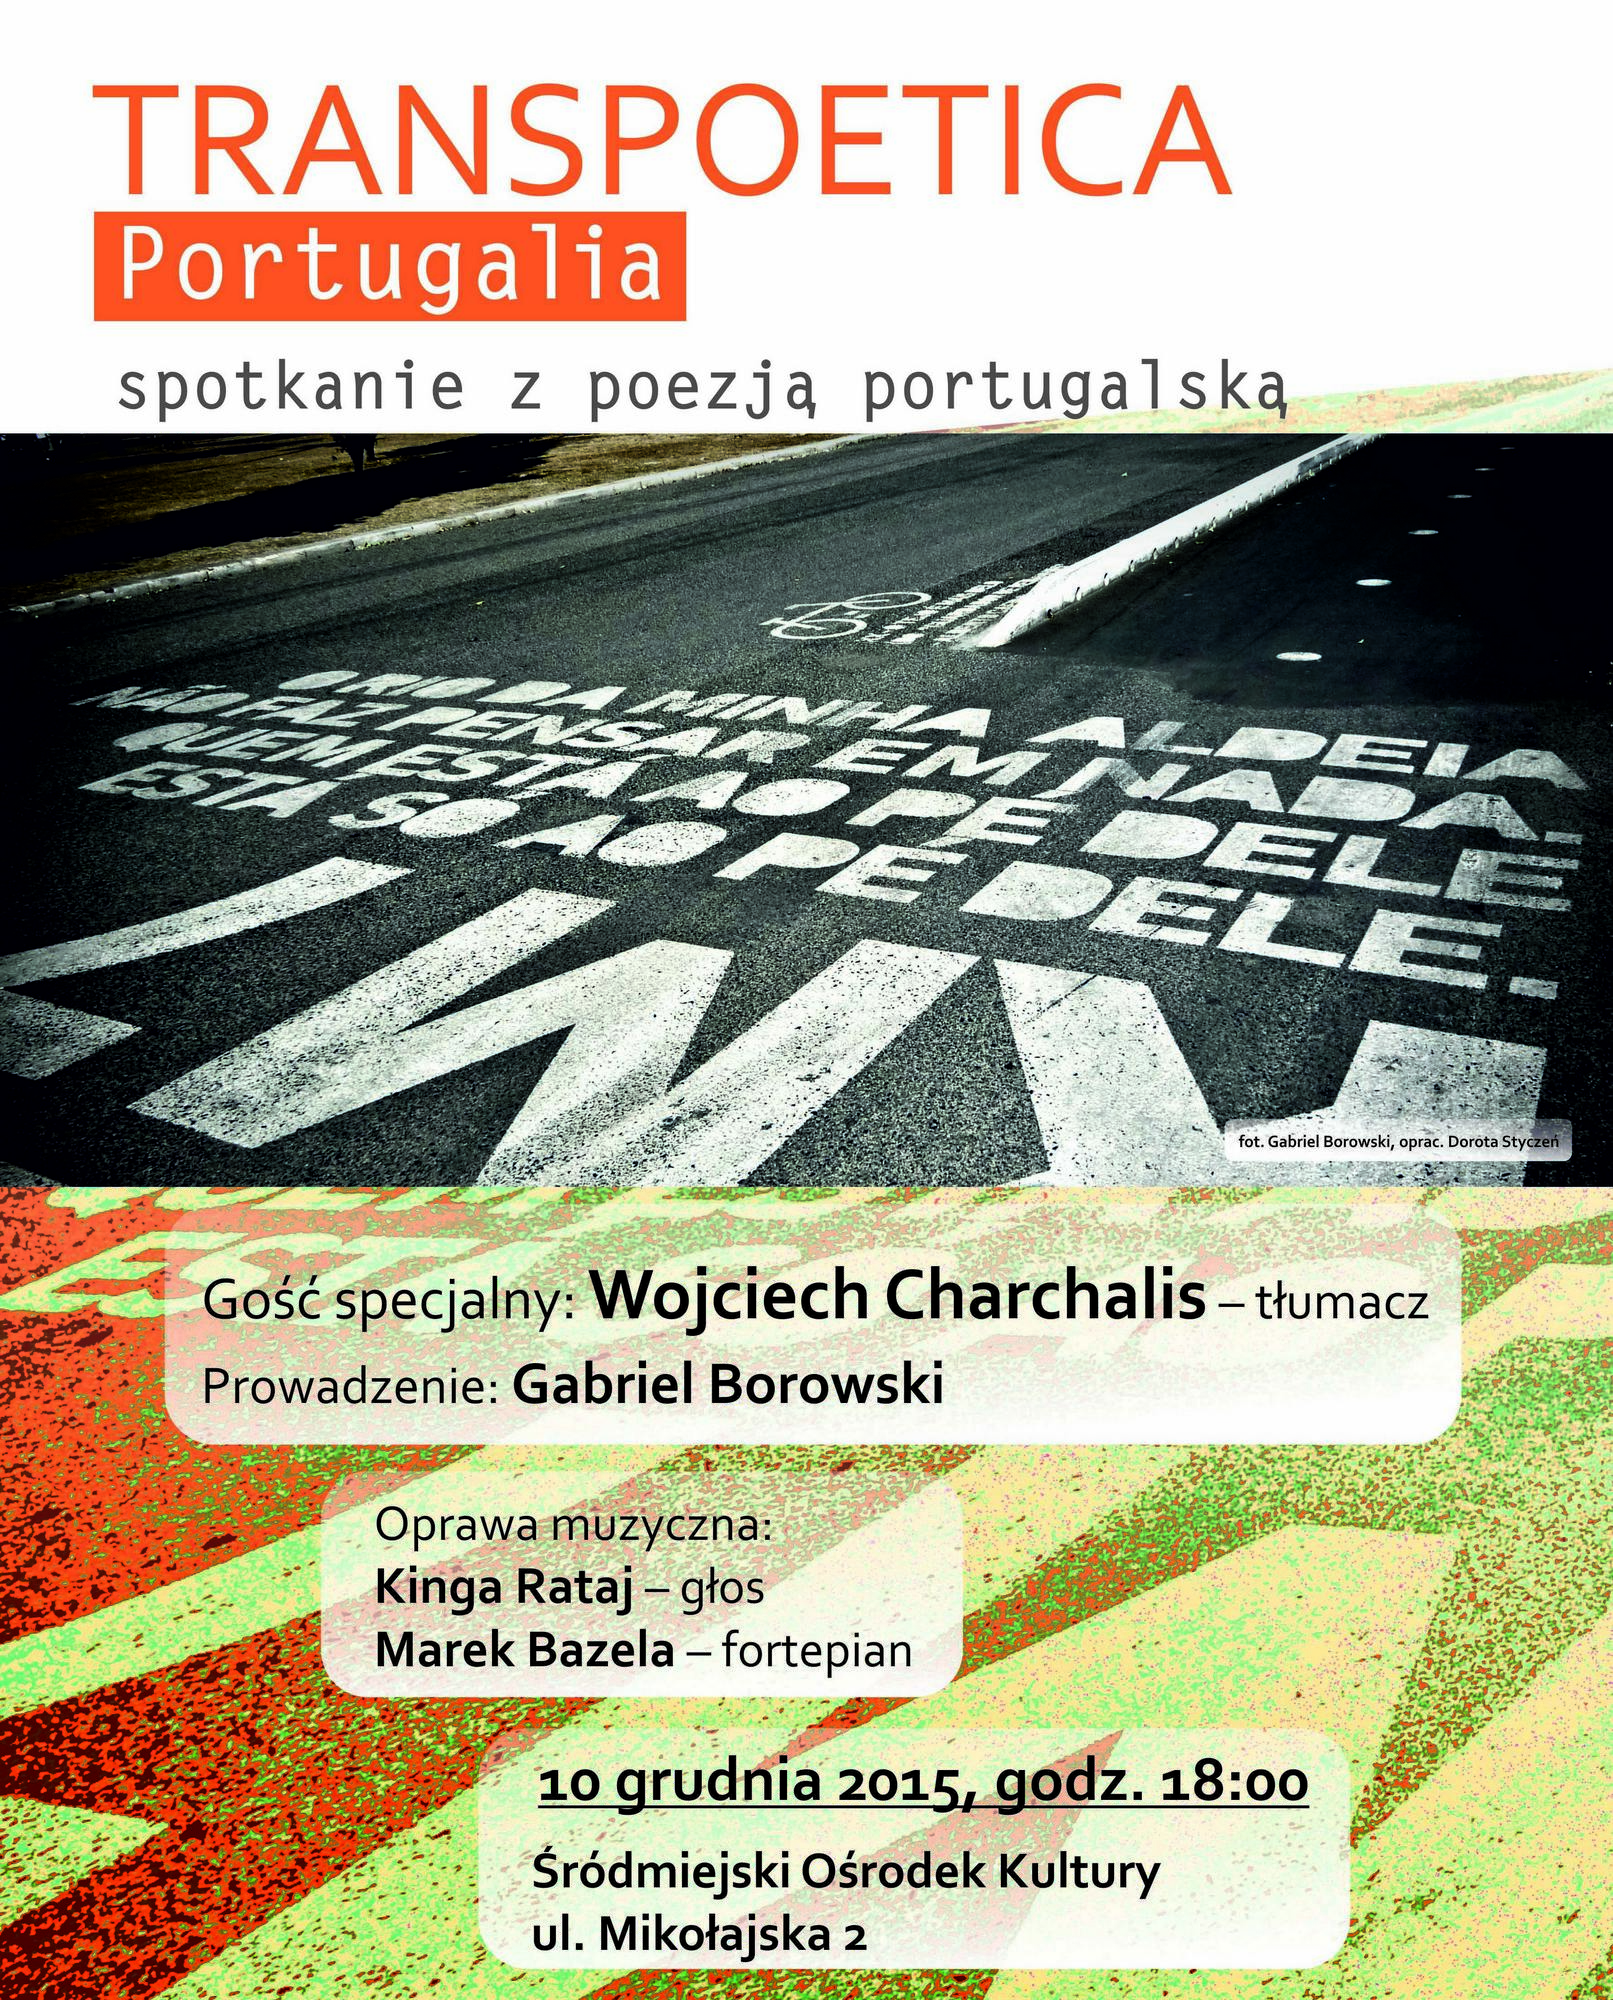 „Transpoetica: Portugalia” – plakat (źródło: materiały prasowe)